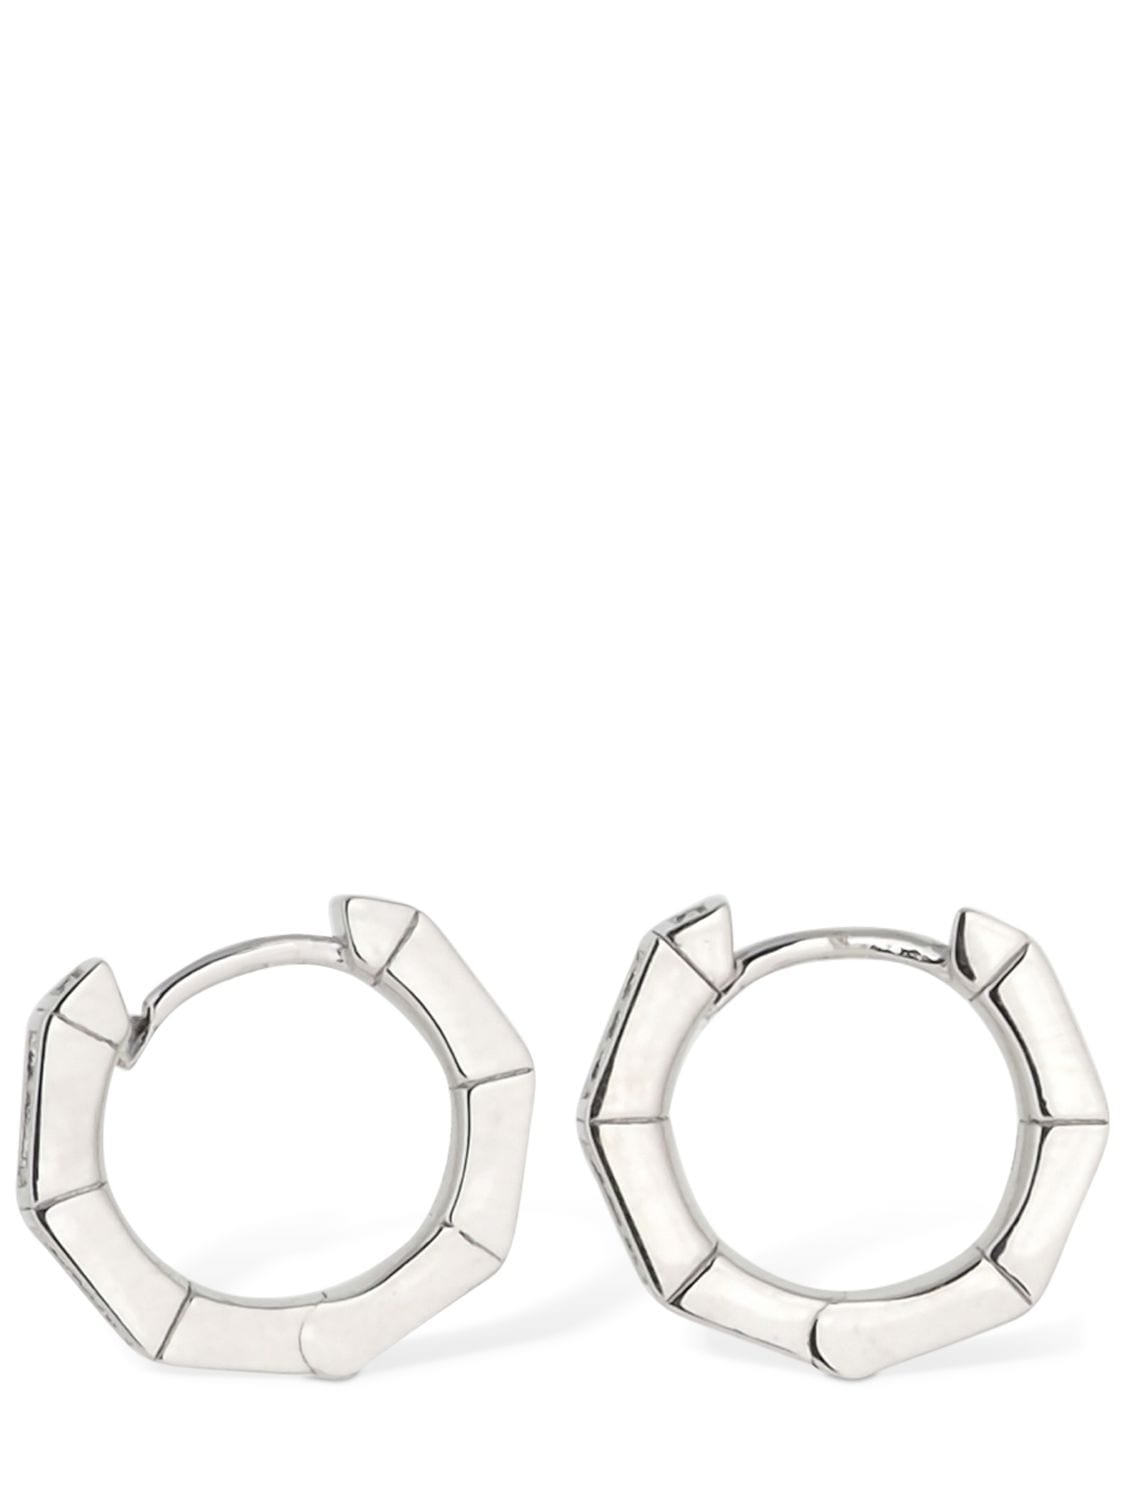 Apm Monaco Small Octagonal Hoop Earrings In Silver